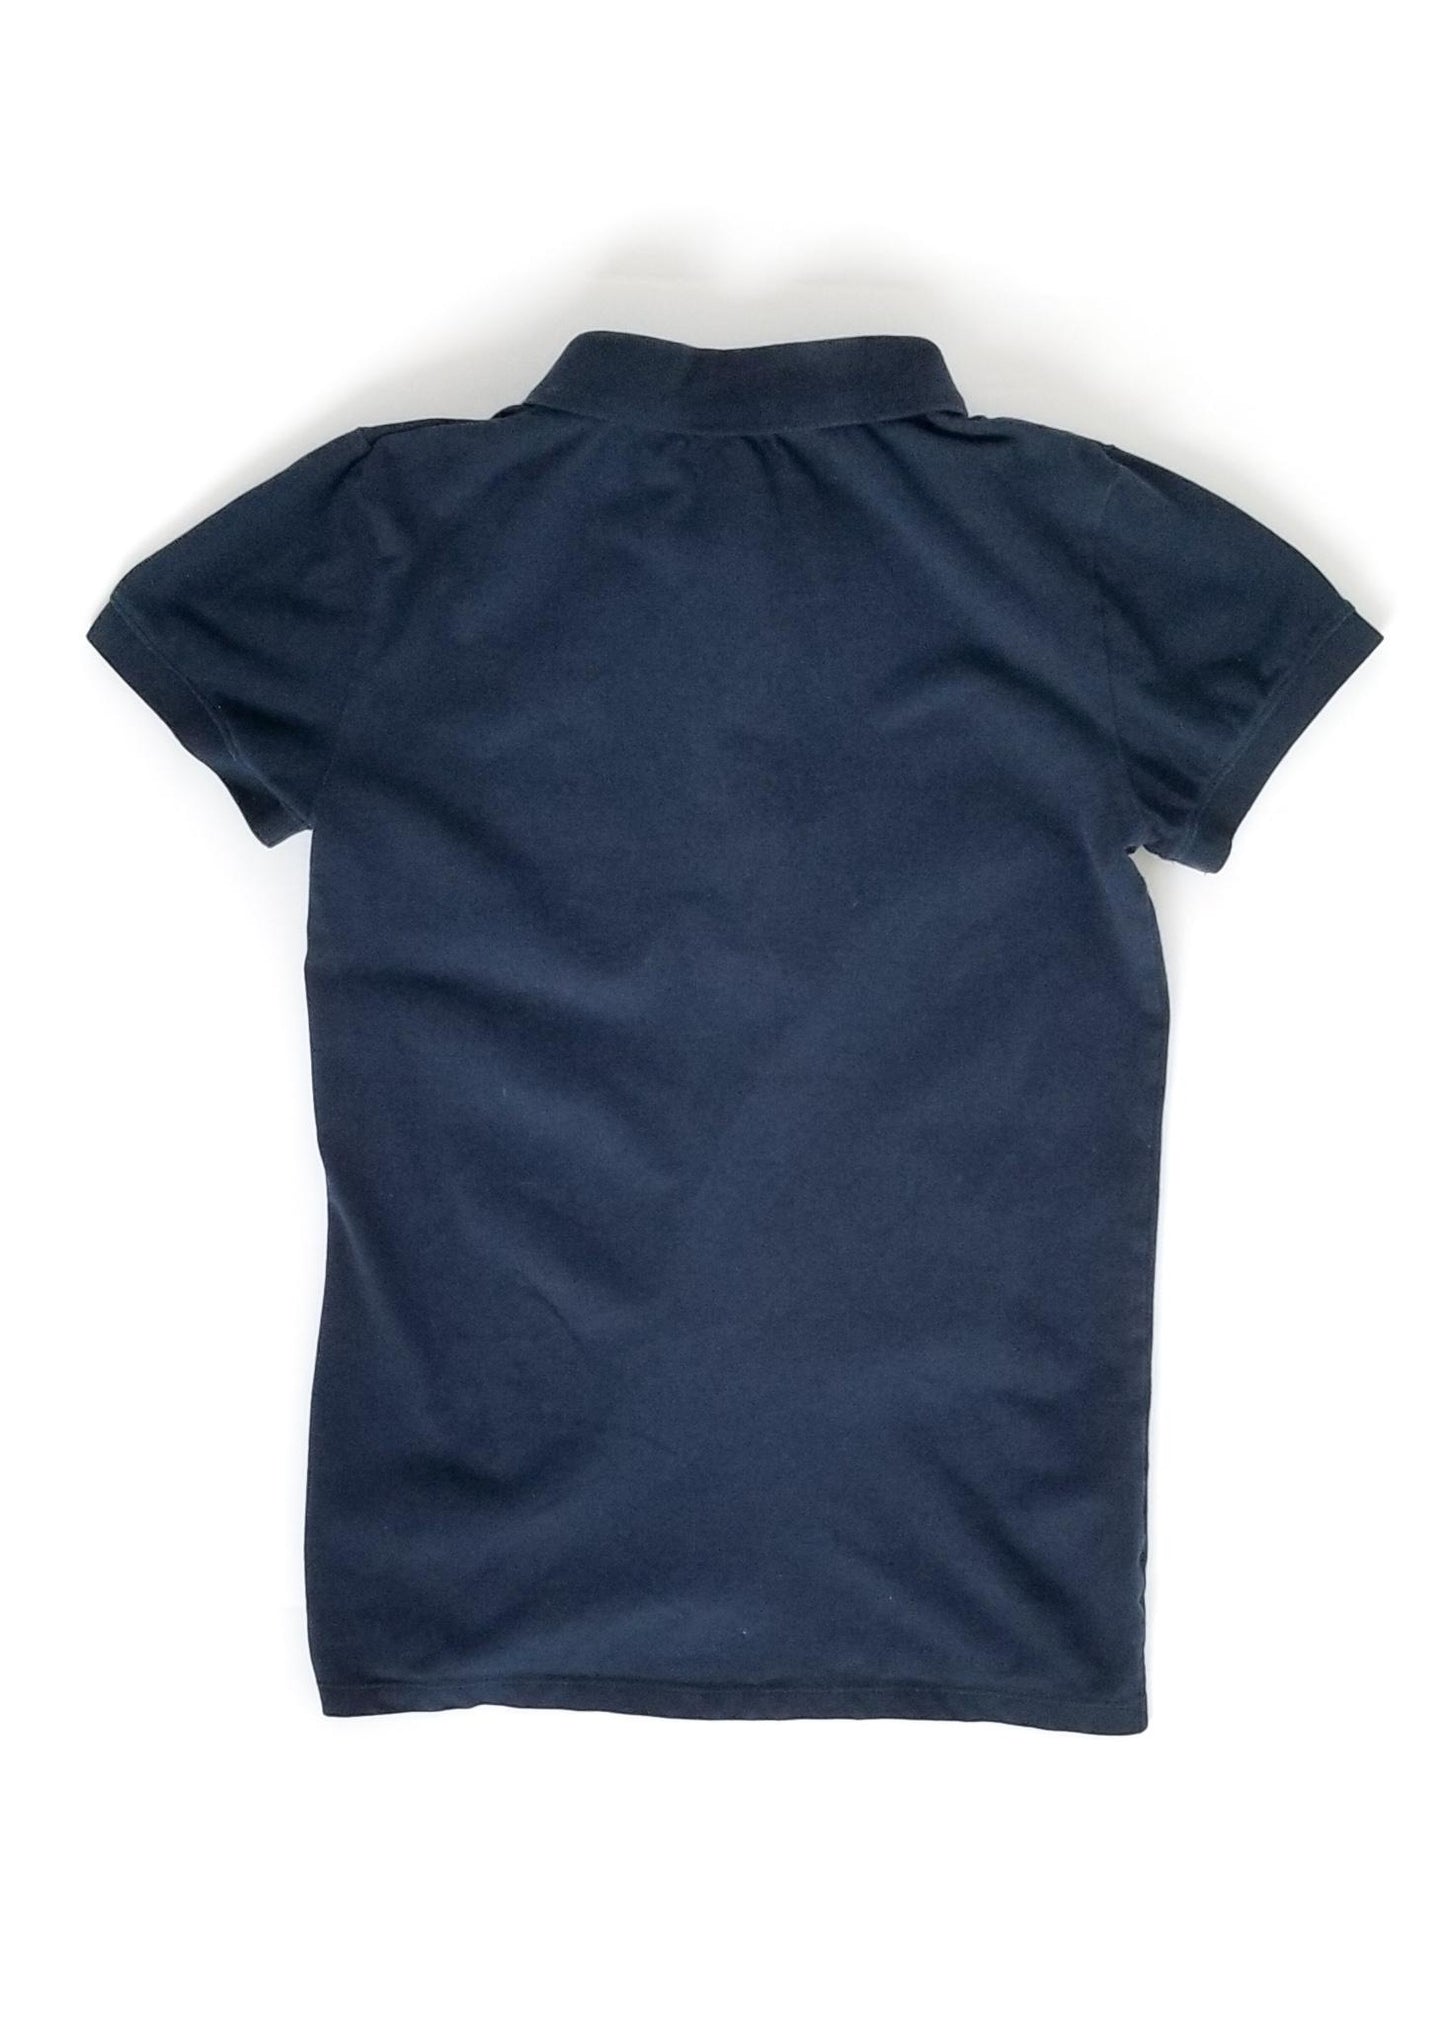 Aerion Pique Polo Shirt - Navy - Women's Small